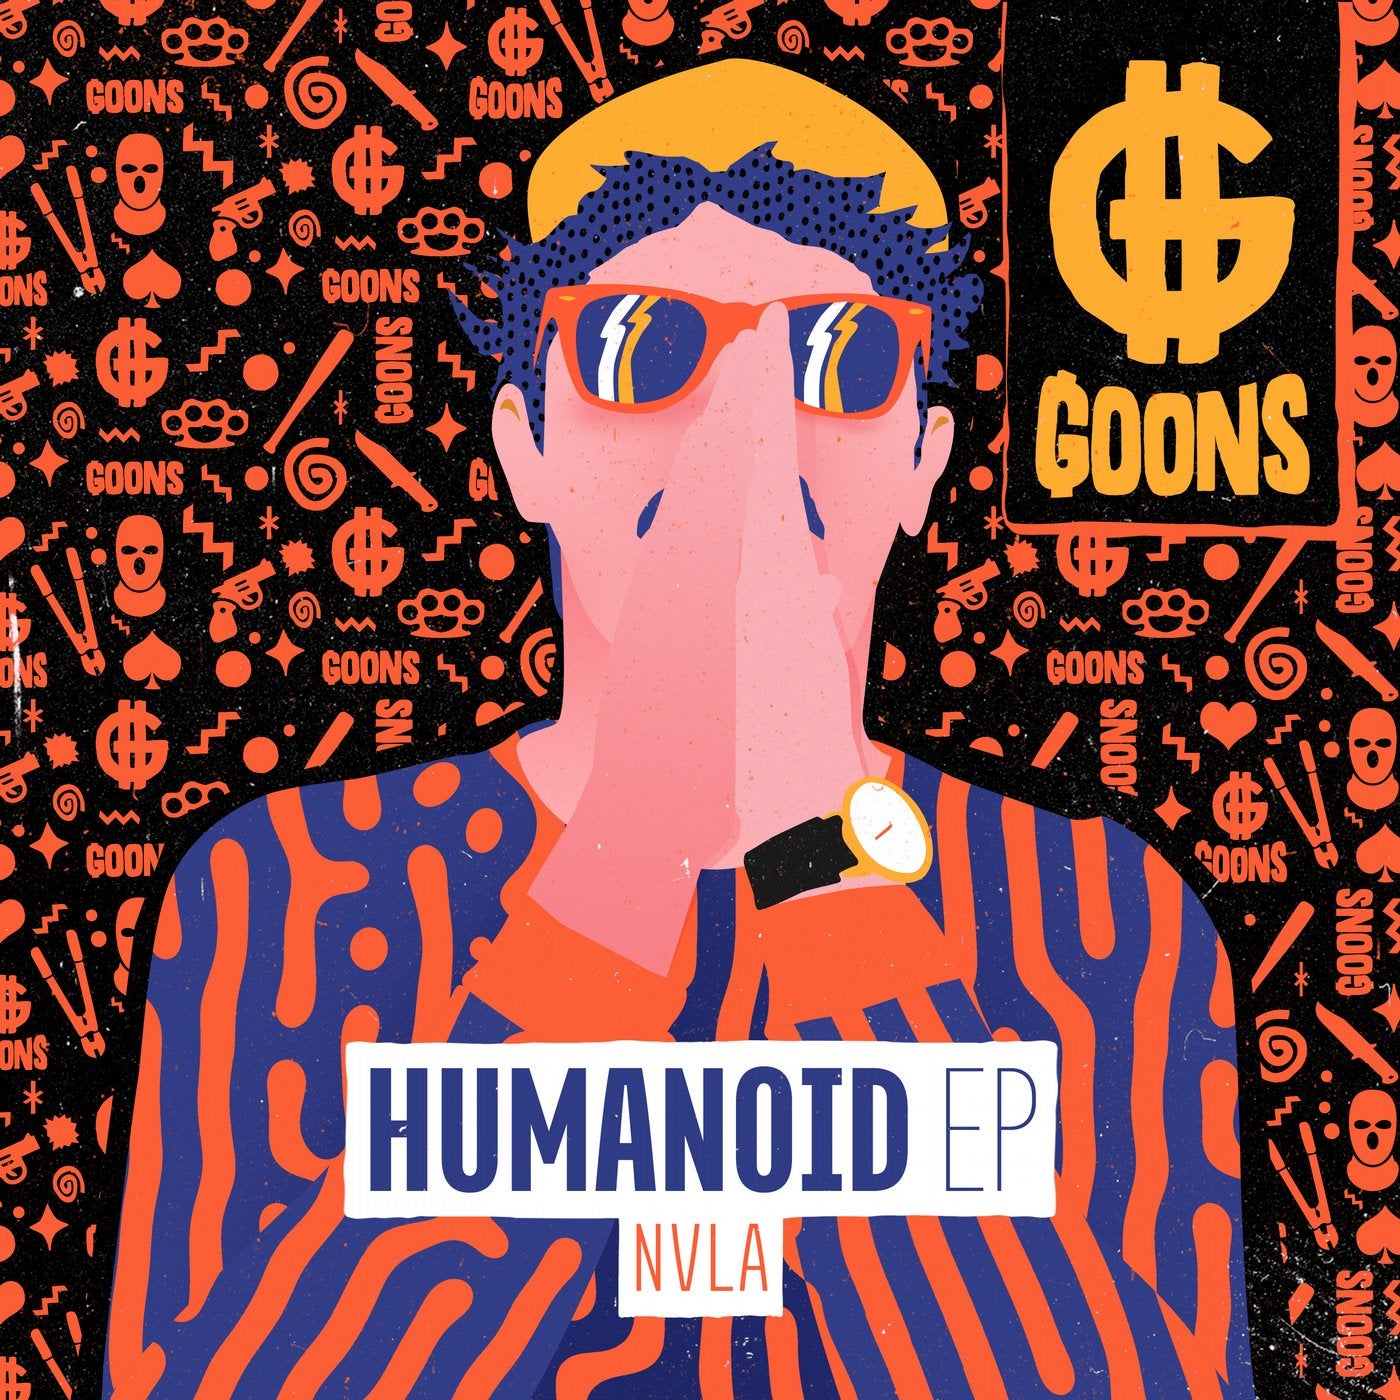 Humanoid EP